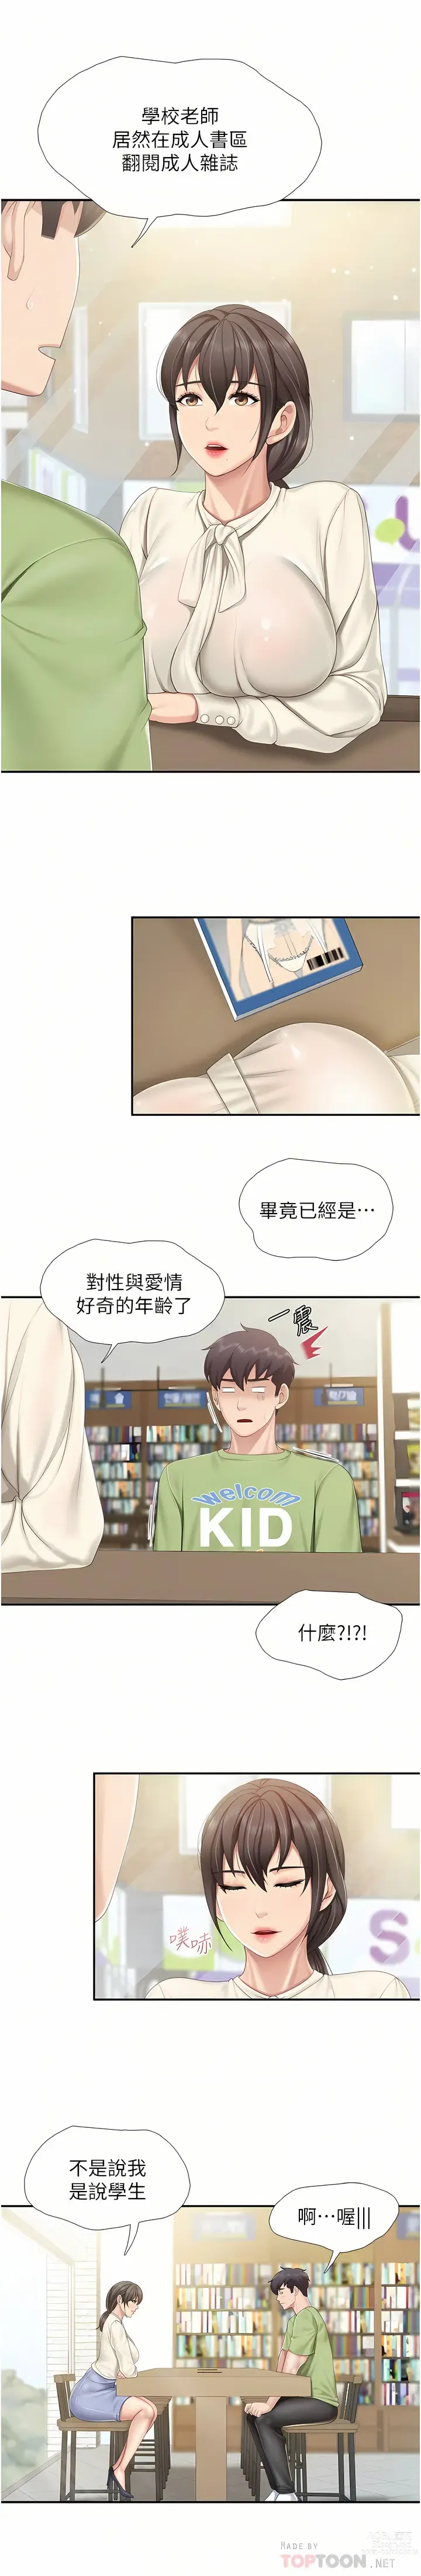 Page 6 of manga 亲子餐厅的妈妈们 51-103